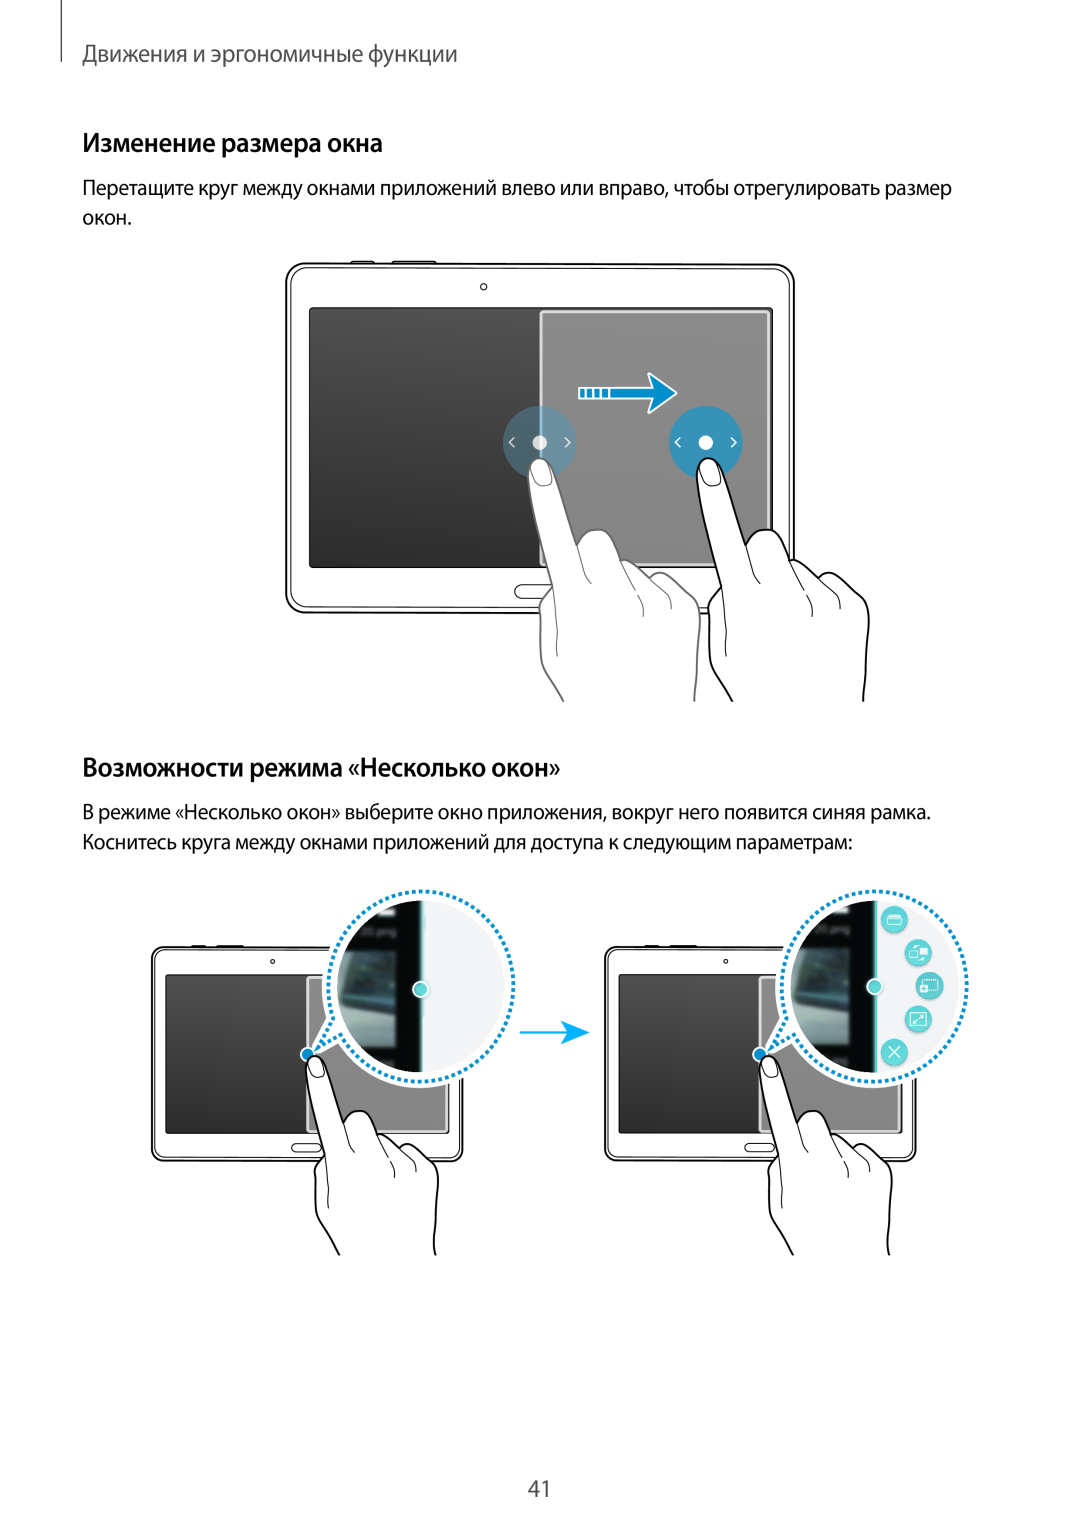 Samsung SM-T800NZWASEB manual Изменение размера окна, Возможности режима «Несколько окон», Движения и эргономичные функции 